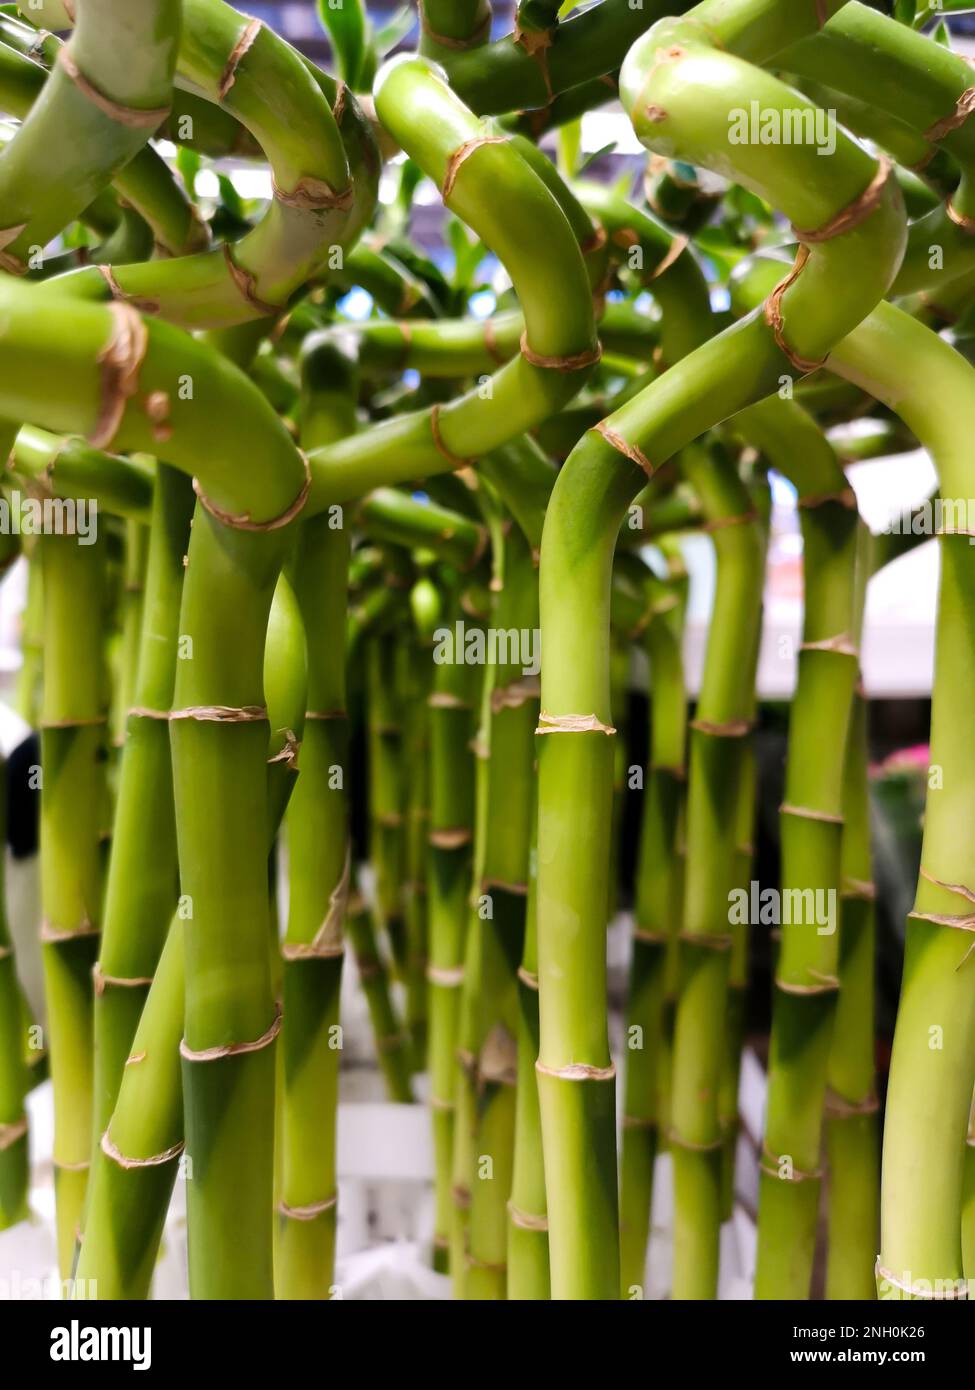 https://c8.alamy.com/compde/2nh0k26/viel-gruner-glucksbambus-zimmerpflanze-mit-grunem-spiralstiel-dracaena-sanderiana-asparagaceae-helicoide-bambussprossen-hintergrundstruktur-vertikal-2nh0k26.jpg